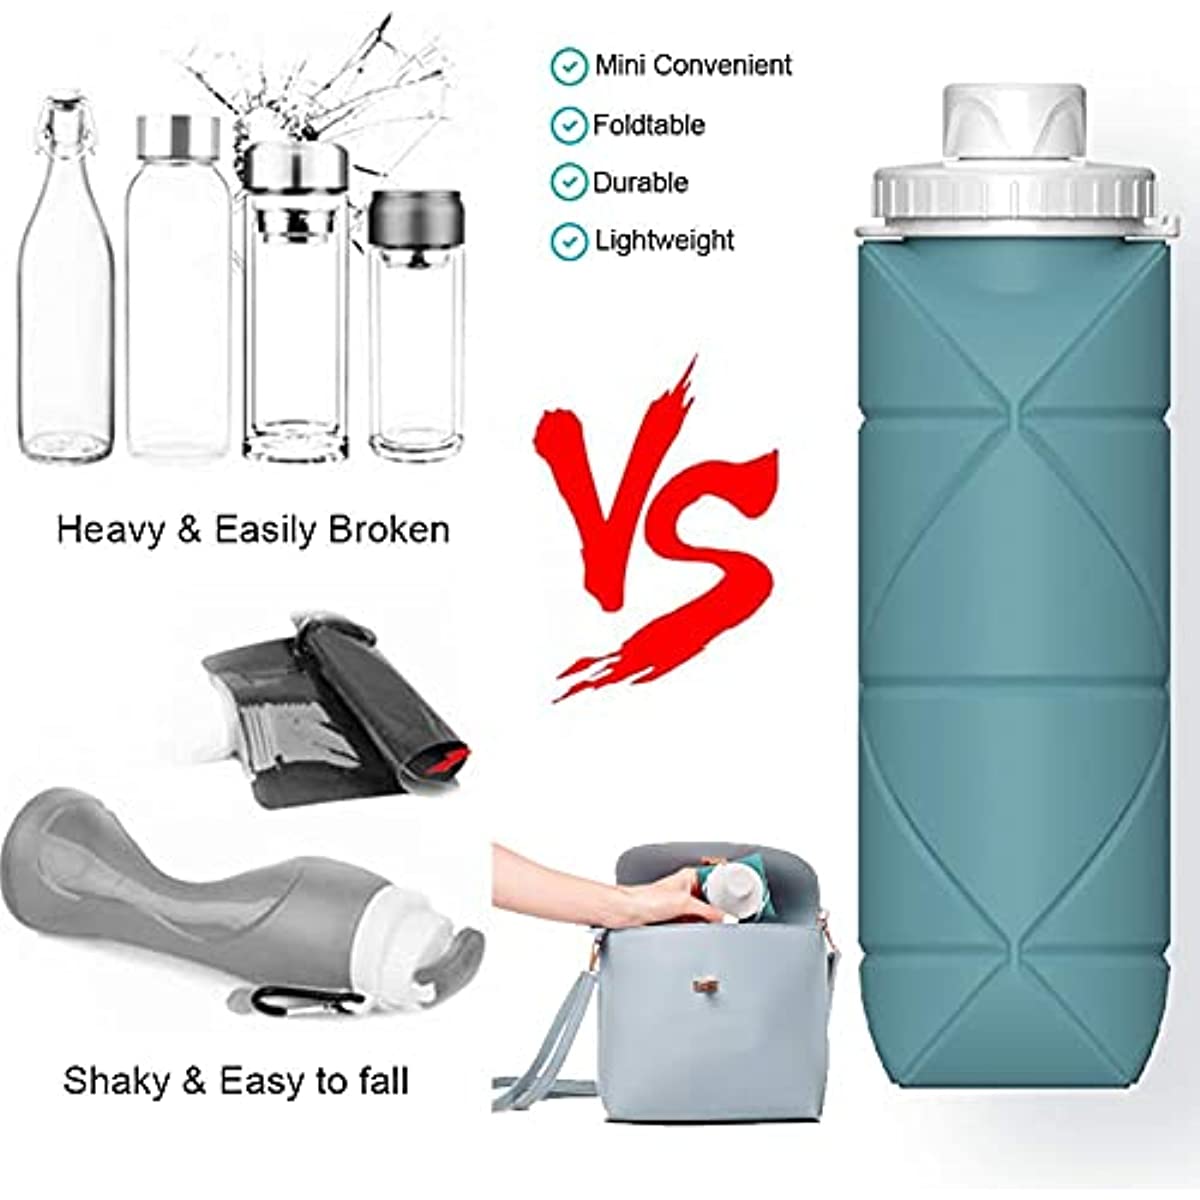 E-Senior Botella de agua plegable libre de BPA, botella de agua plegable de  20 onzas para botellas d…Ver más E-Senior Botella de agua plegable libre